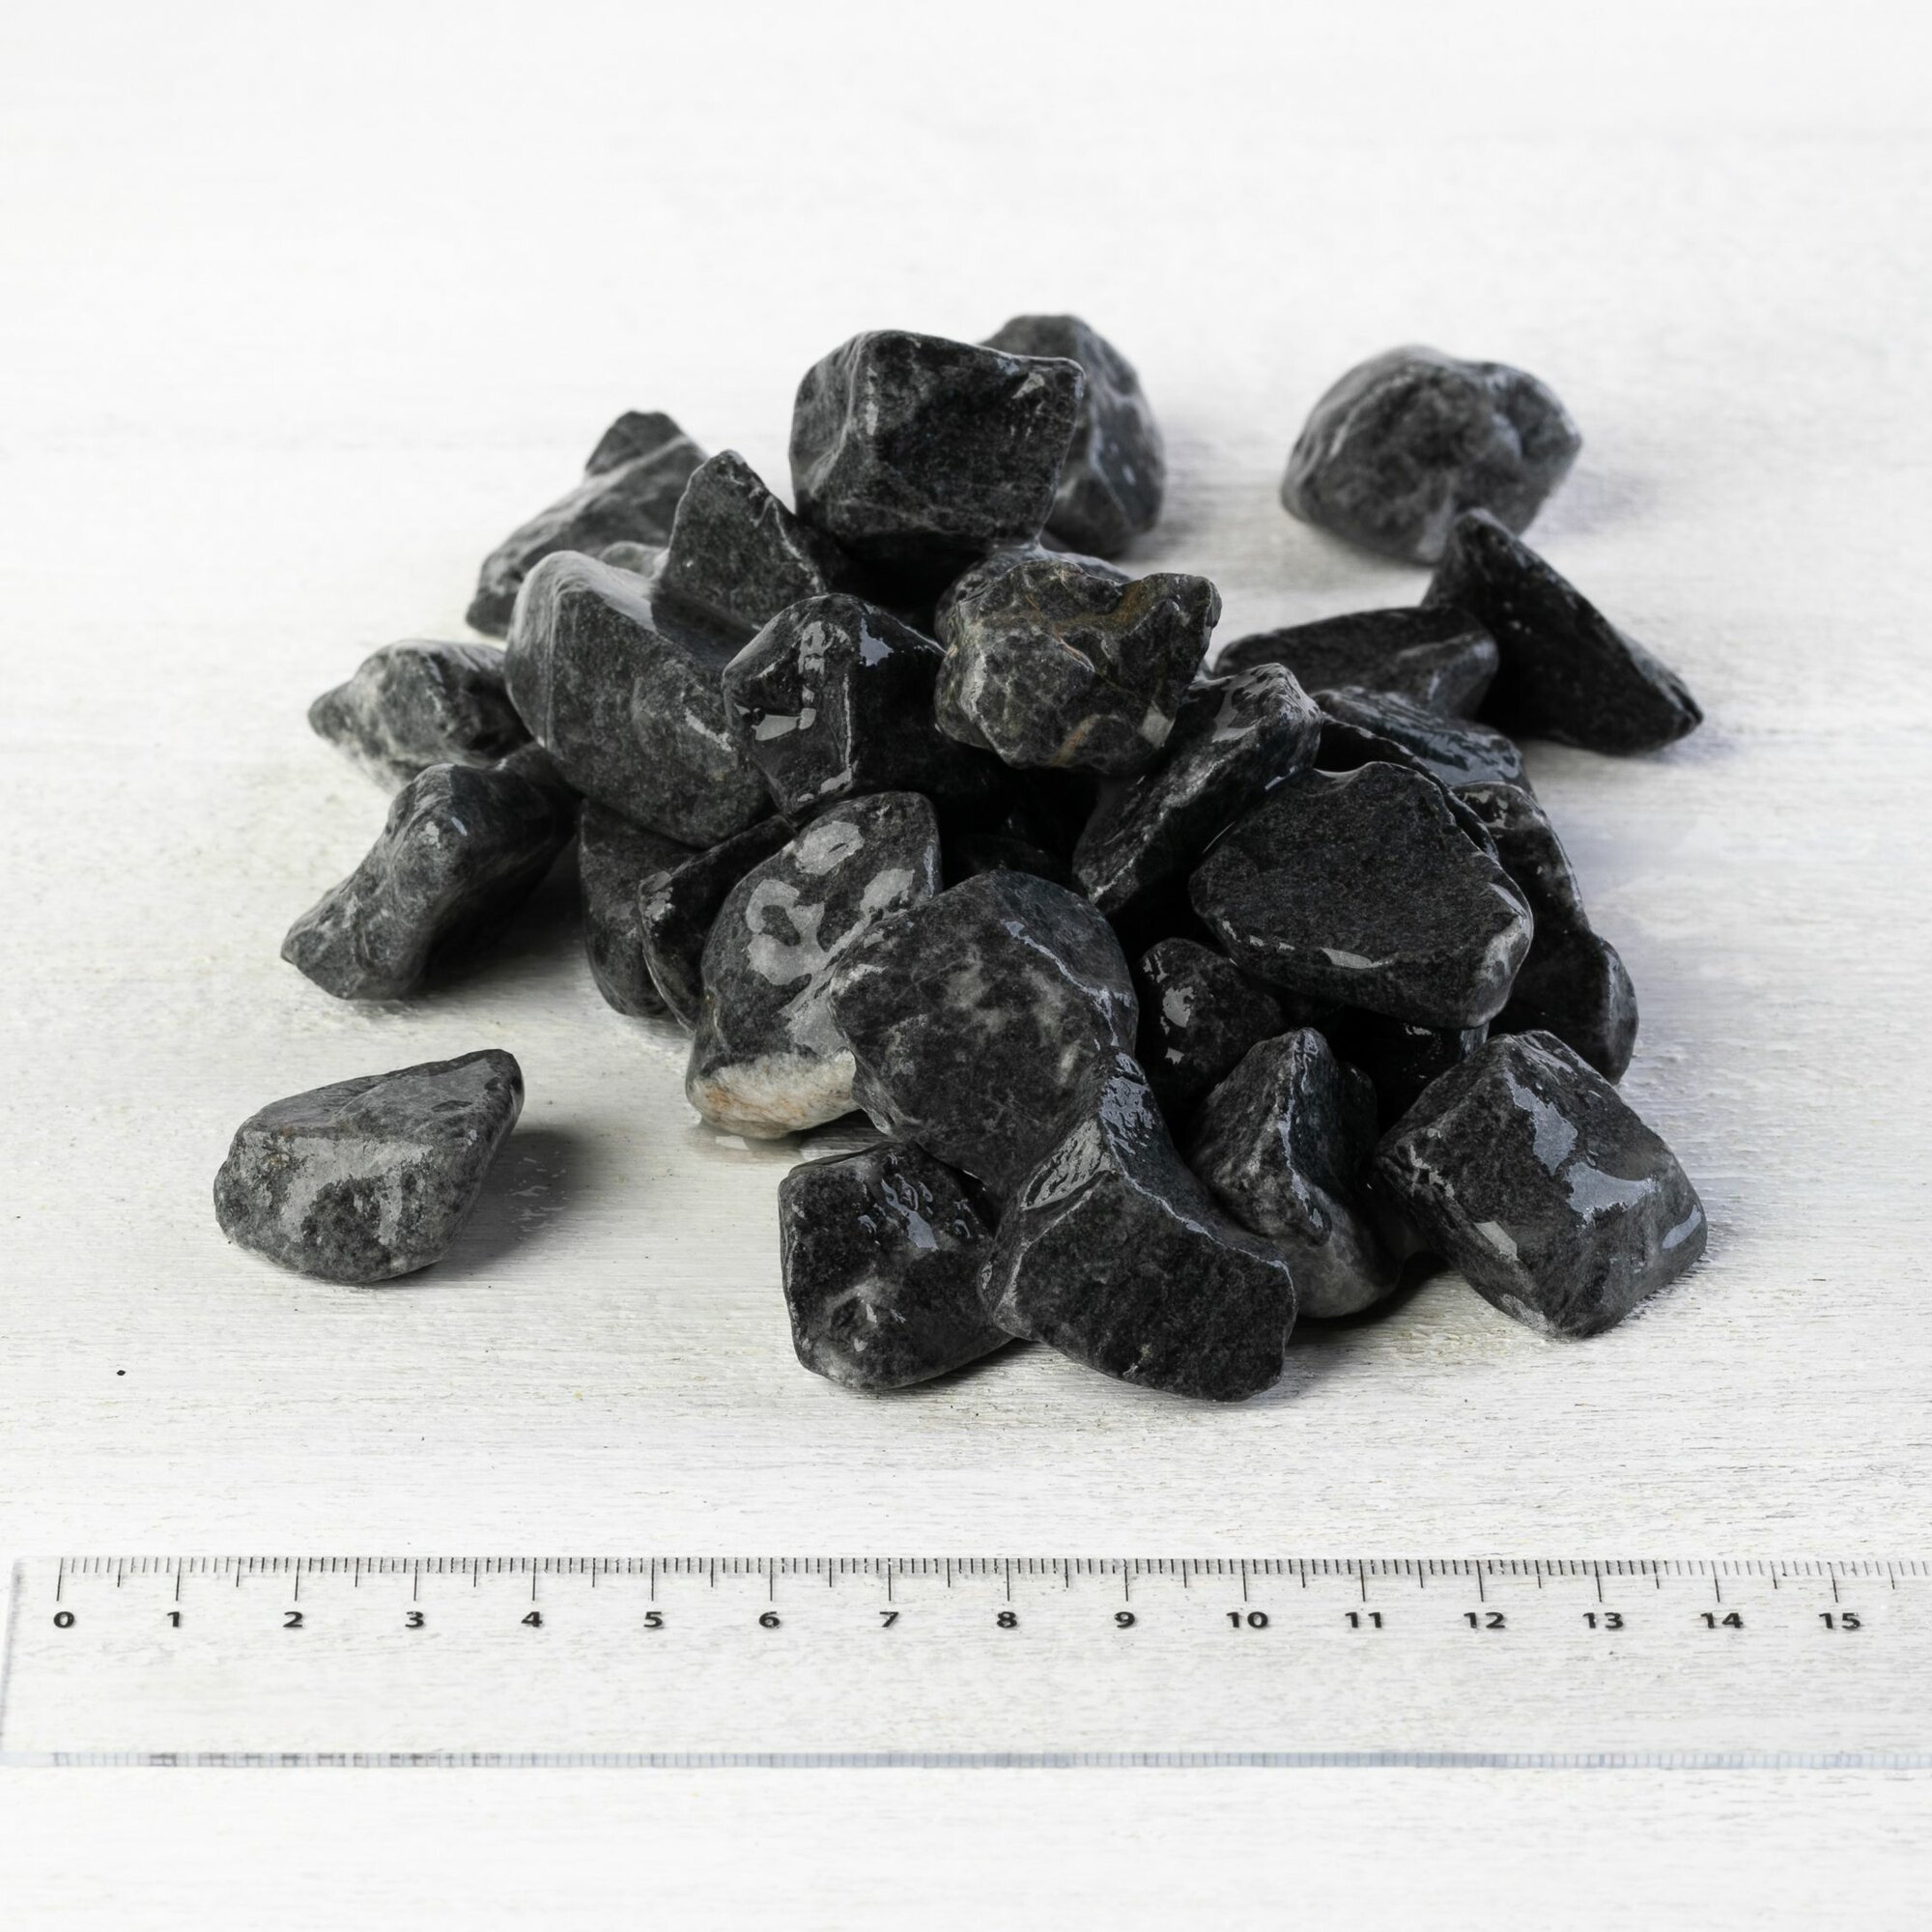 Камень ландшафтный мрамор черный Доломит, фракция 10-20 мм 3 кг (315). Декоративный грунт, каменная крошка, щебень